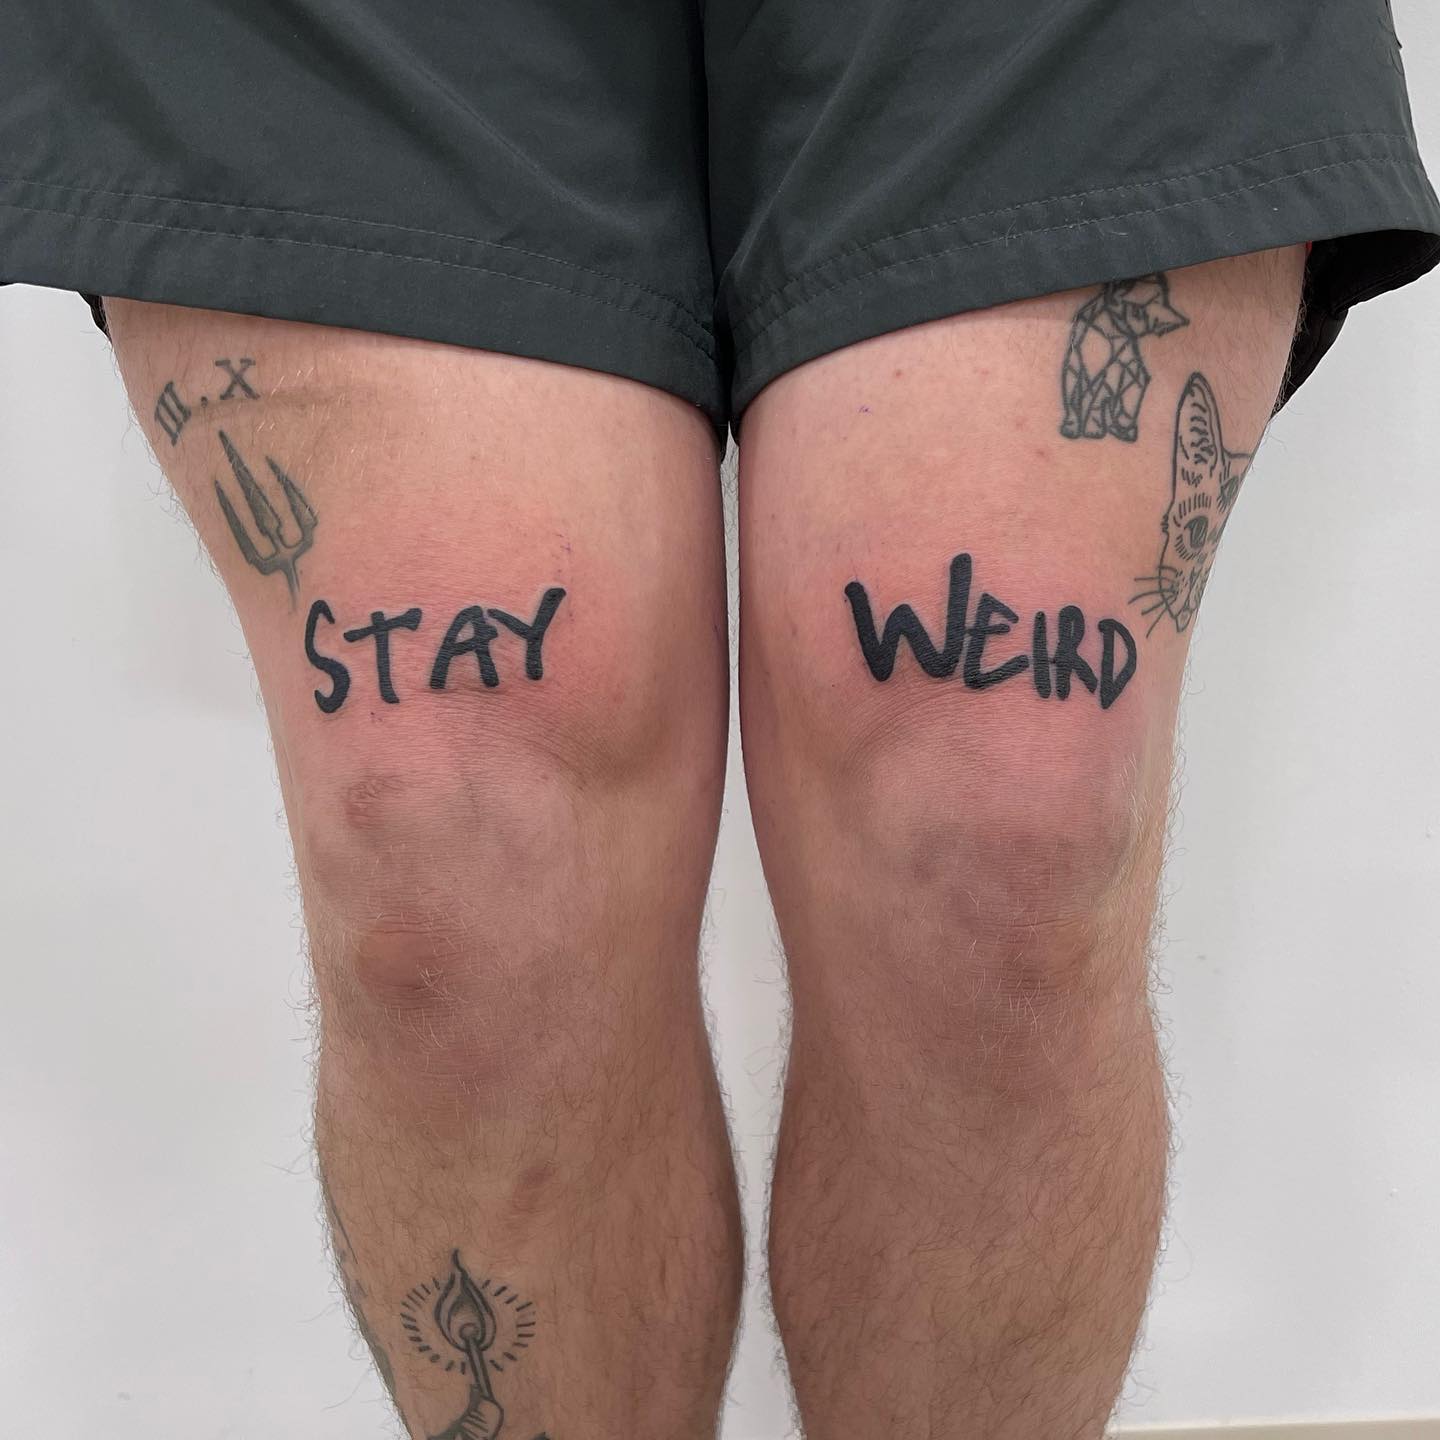 Mantente raro Tatuaje por encima de la rodilla.